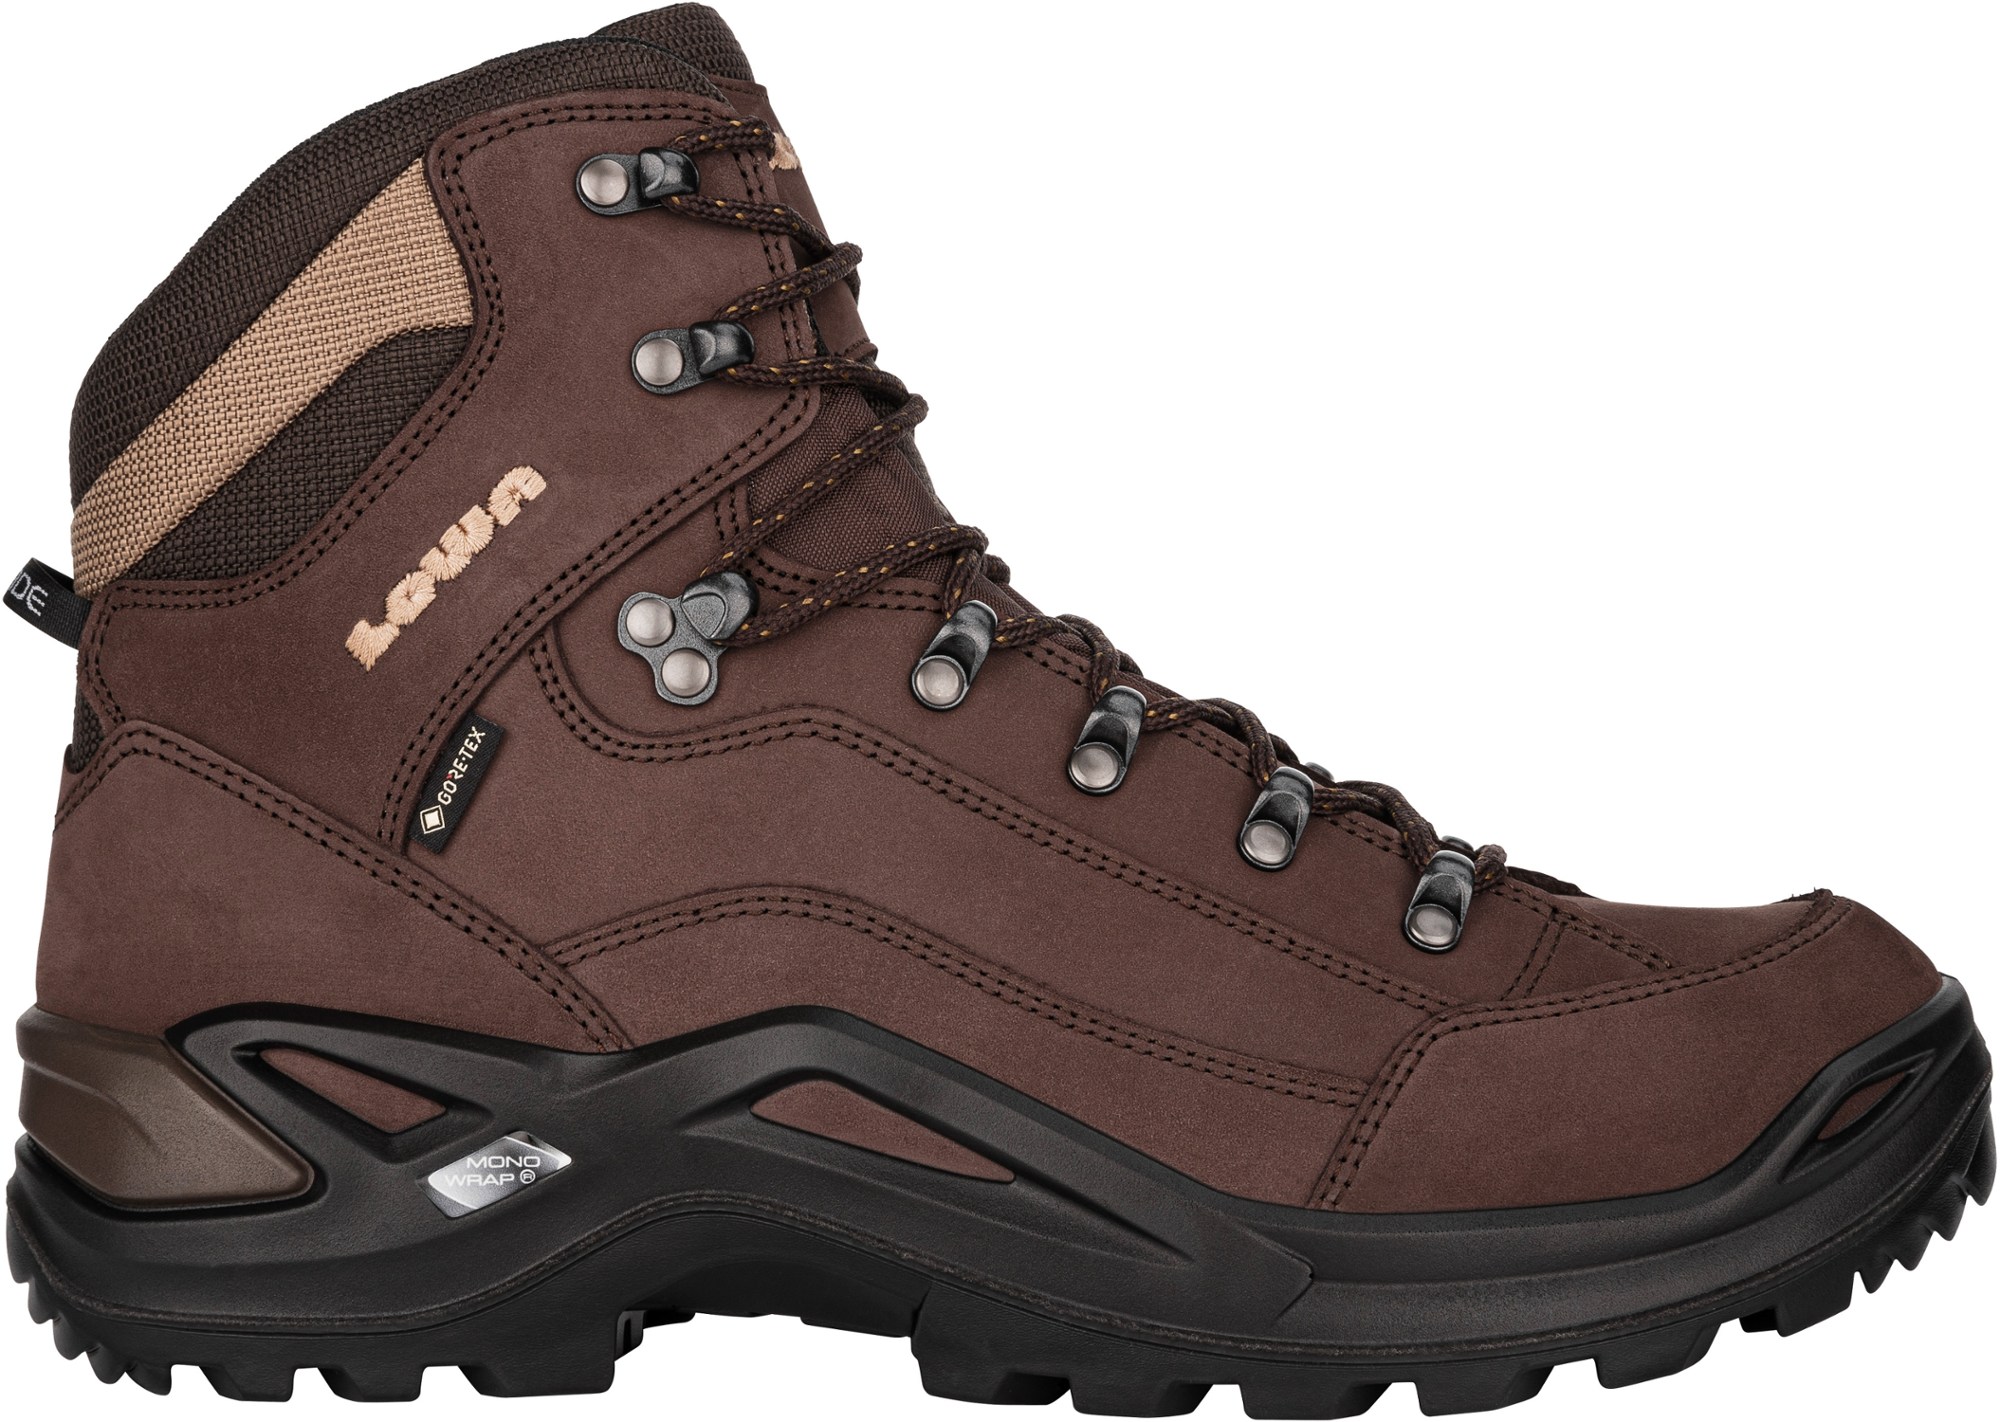 Походные ботинки Renegade GTX Mid — мужские Lowa, коричневый мужские водонепроницаемые походные ботинки черные ботинки для походов и горного туризма обувь для улицы для альпинизма для зимы 2022